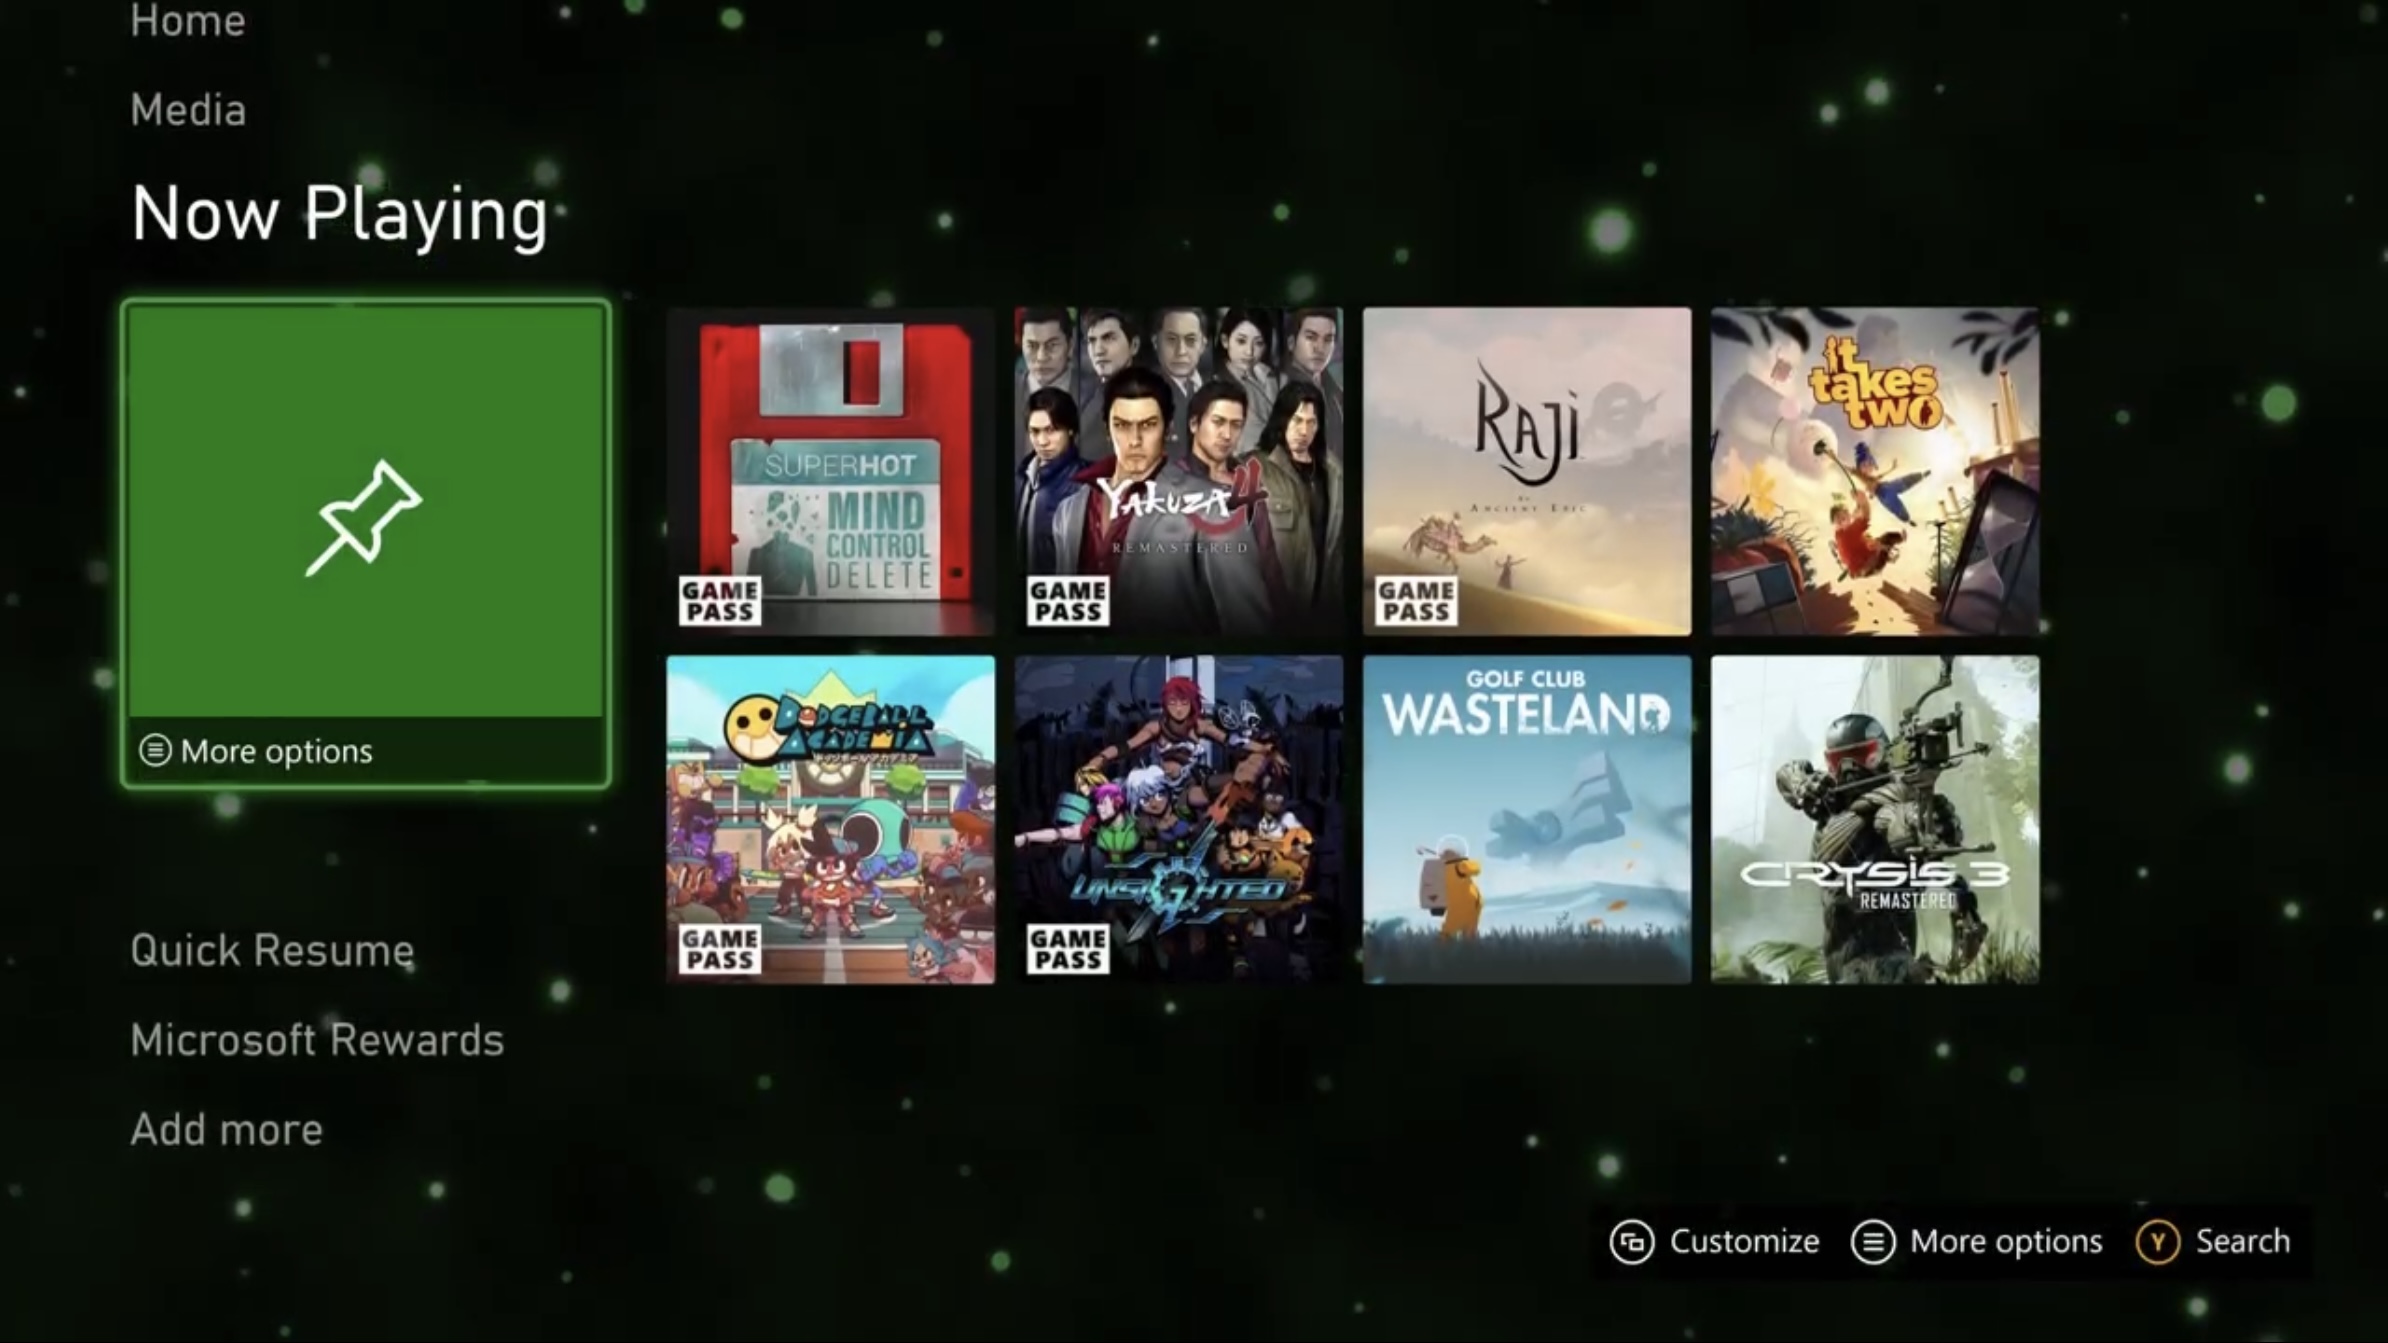 Microsoft confirma: Xbox Series S não vai rodar jogos otimizados